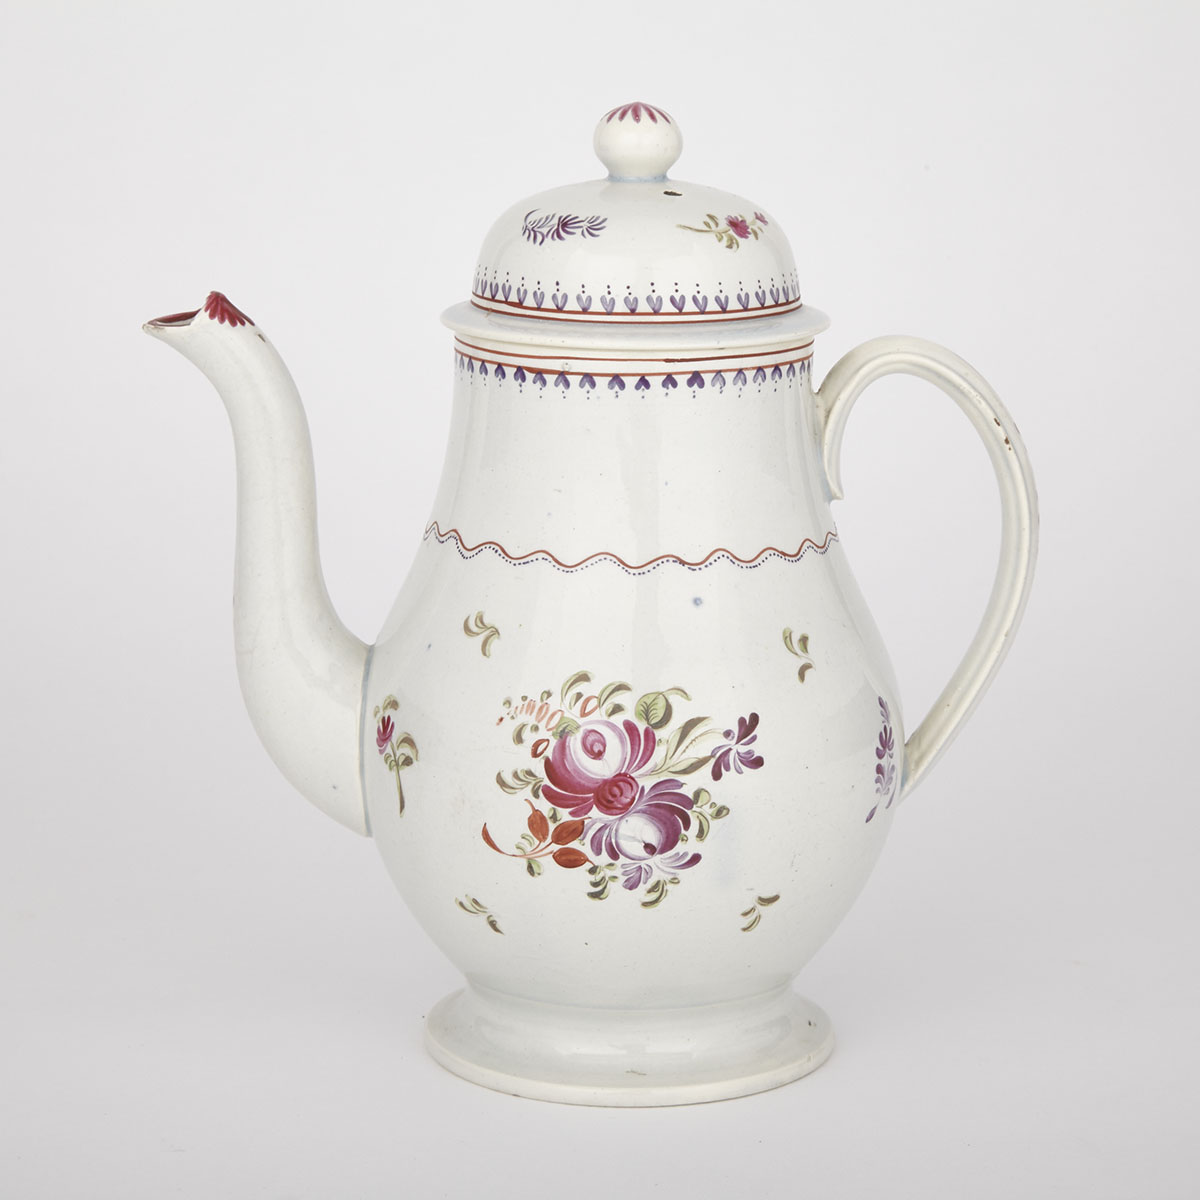 English Pearlware Coffee Pot c.1790-1800